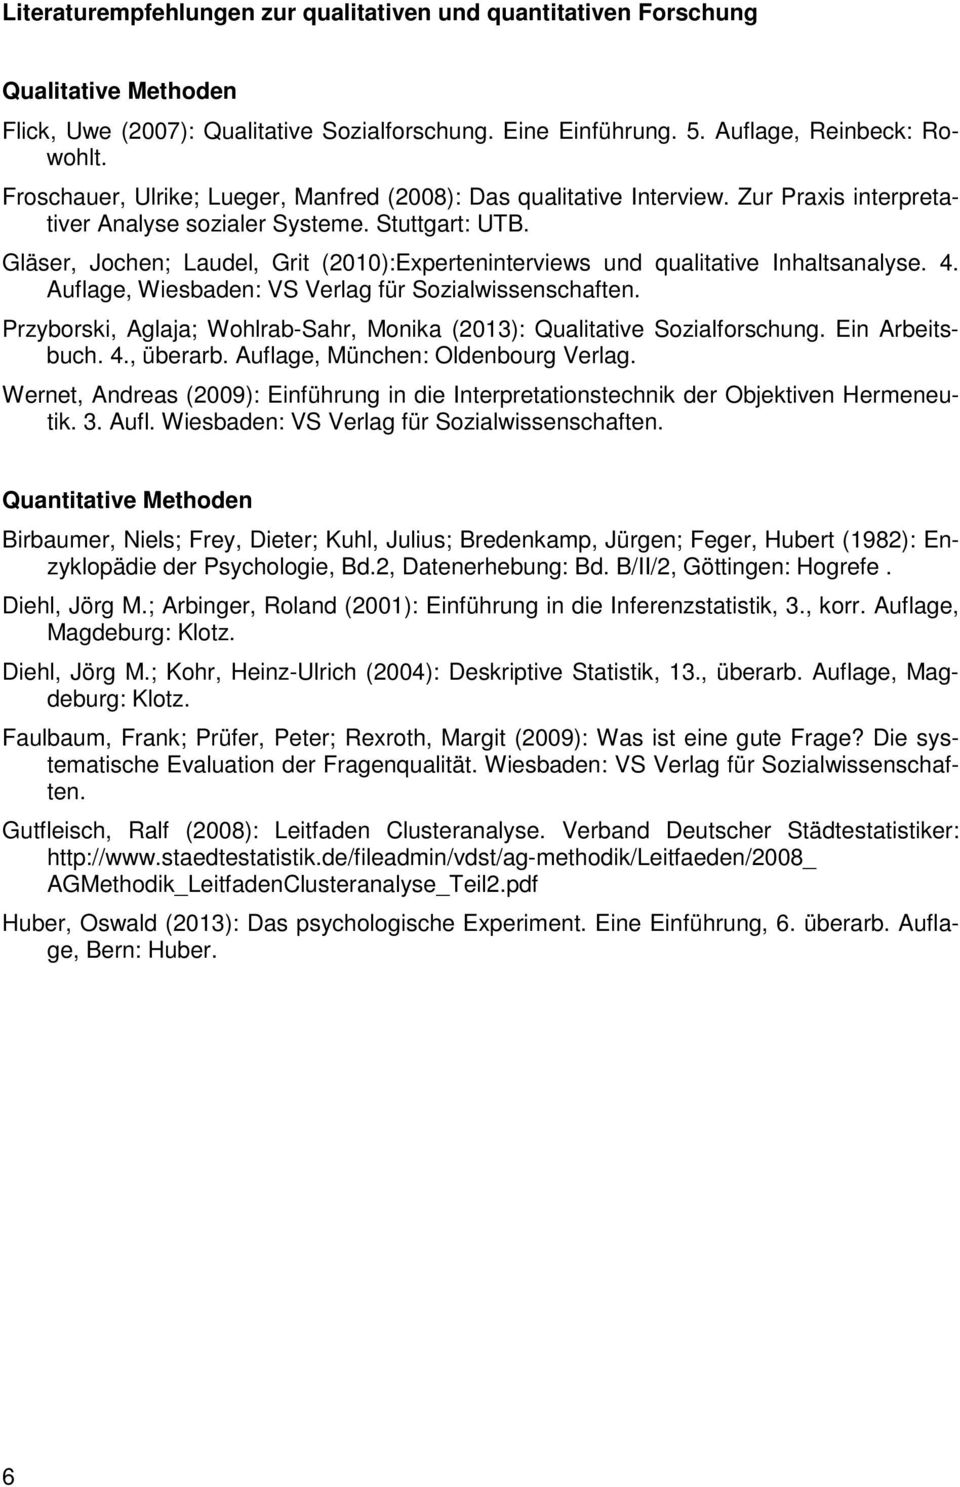 Gläser, Jochen; Laudel, Grit (2010):Experteninterviews und qualitative Inhaltsanalyse. 4. Auflage, Wiesbaden: VS Verlag für Sozialwissenschaften.